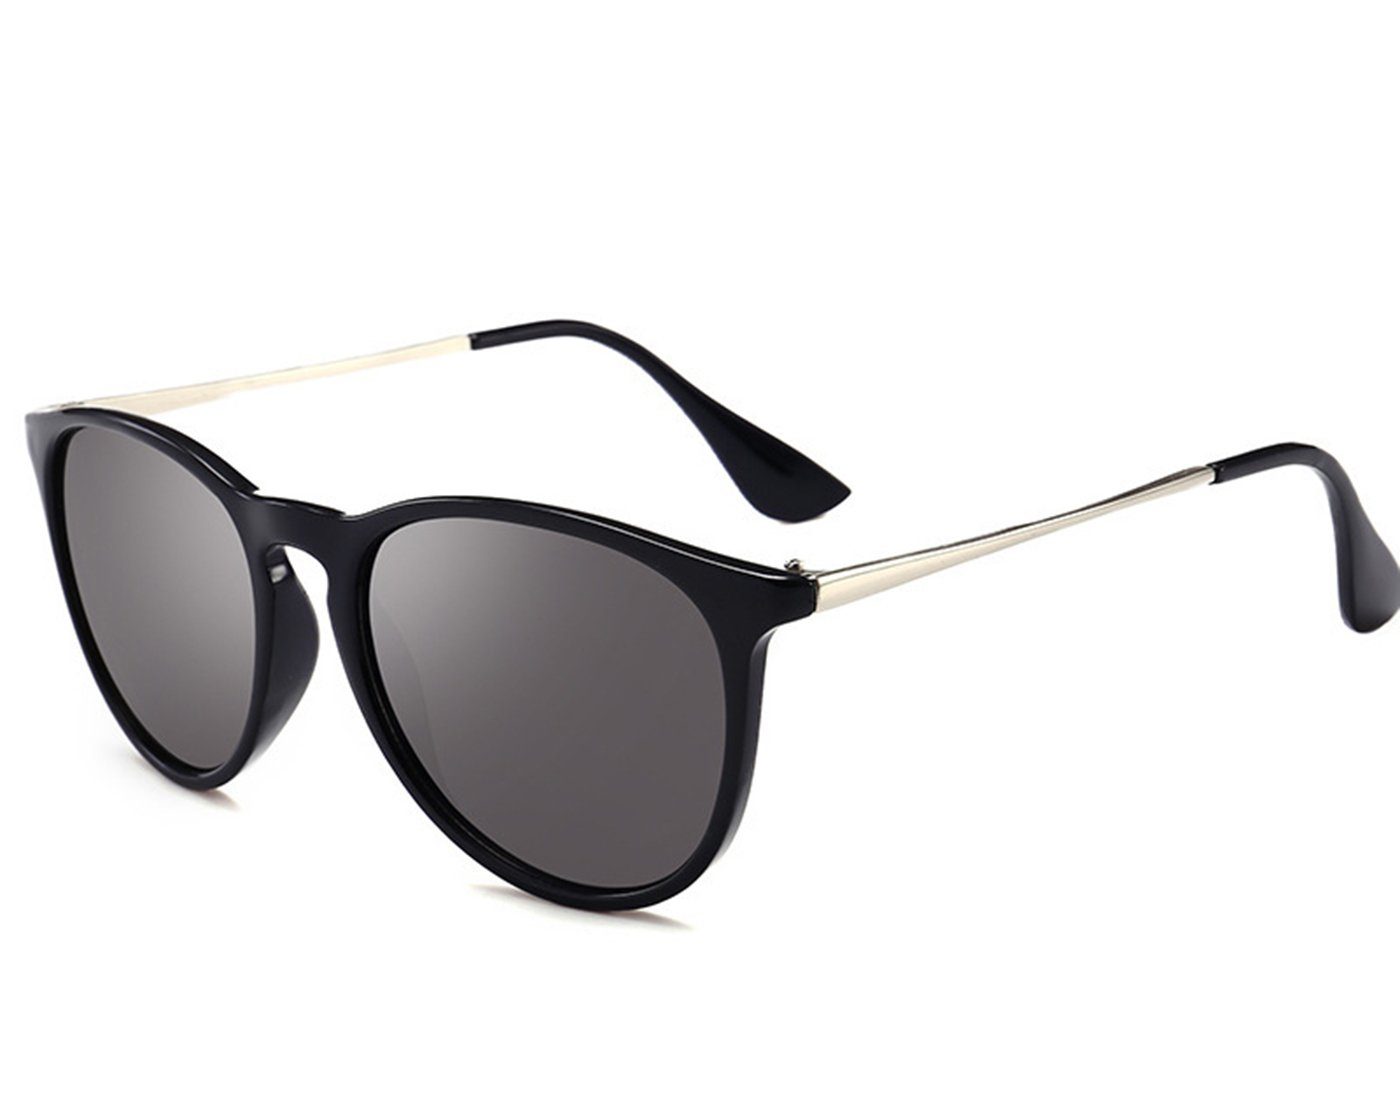 Haiaveng Sonnenbrille Vintage Runde Sonnenbrille Unisex Modische Retro-Brille,Brille mit UV400-Schutz black